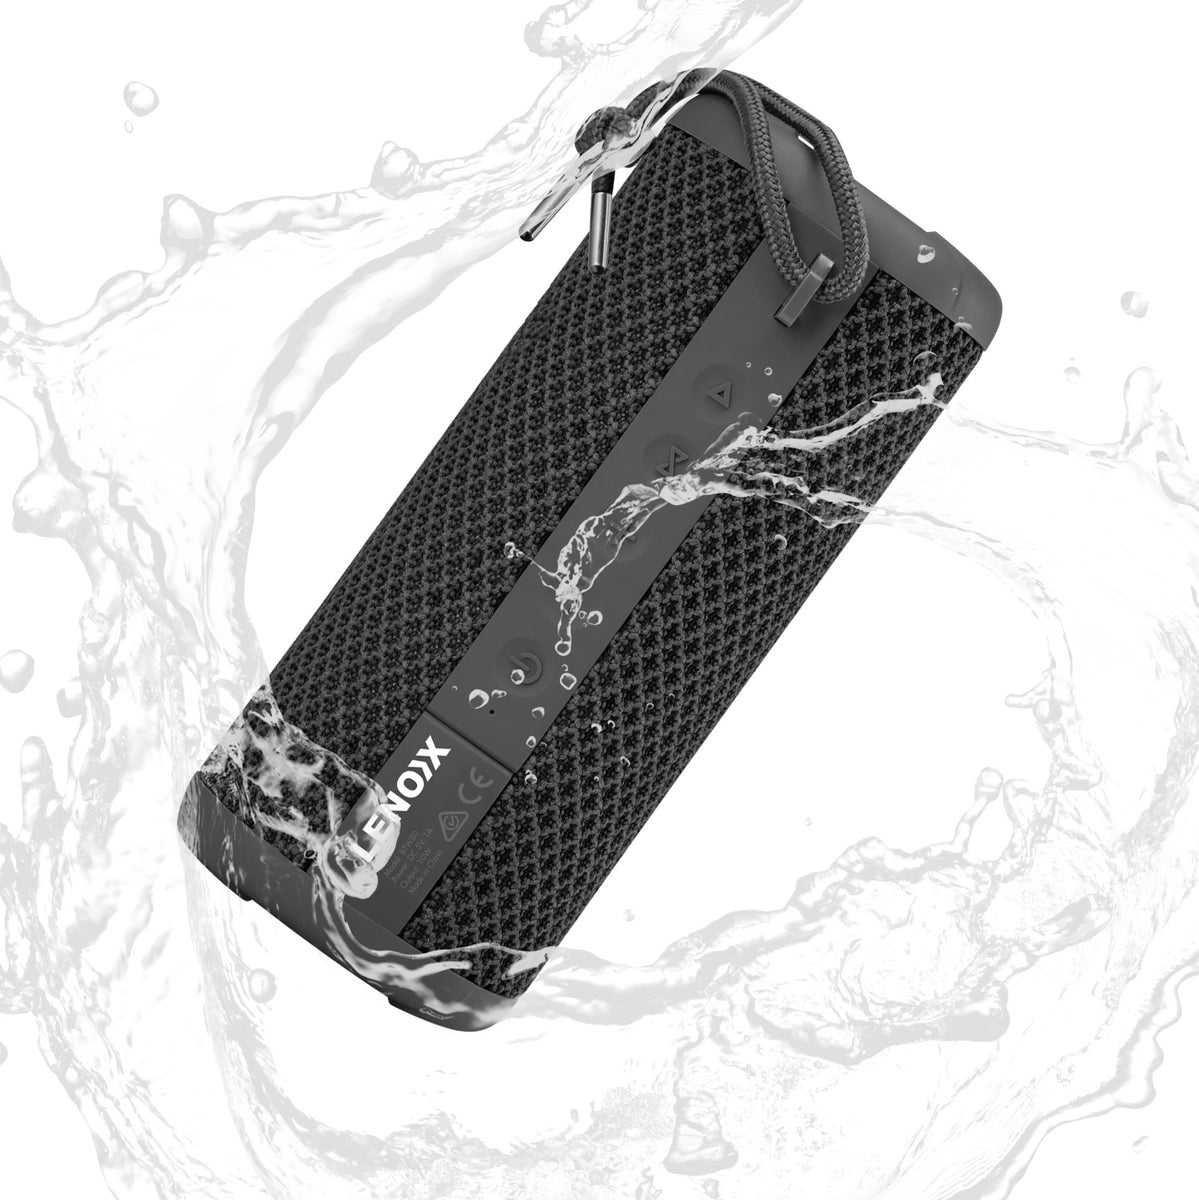 Black waterproof portable bluetooth speaker.